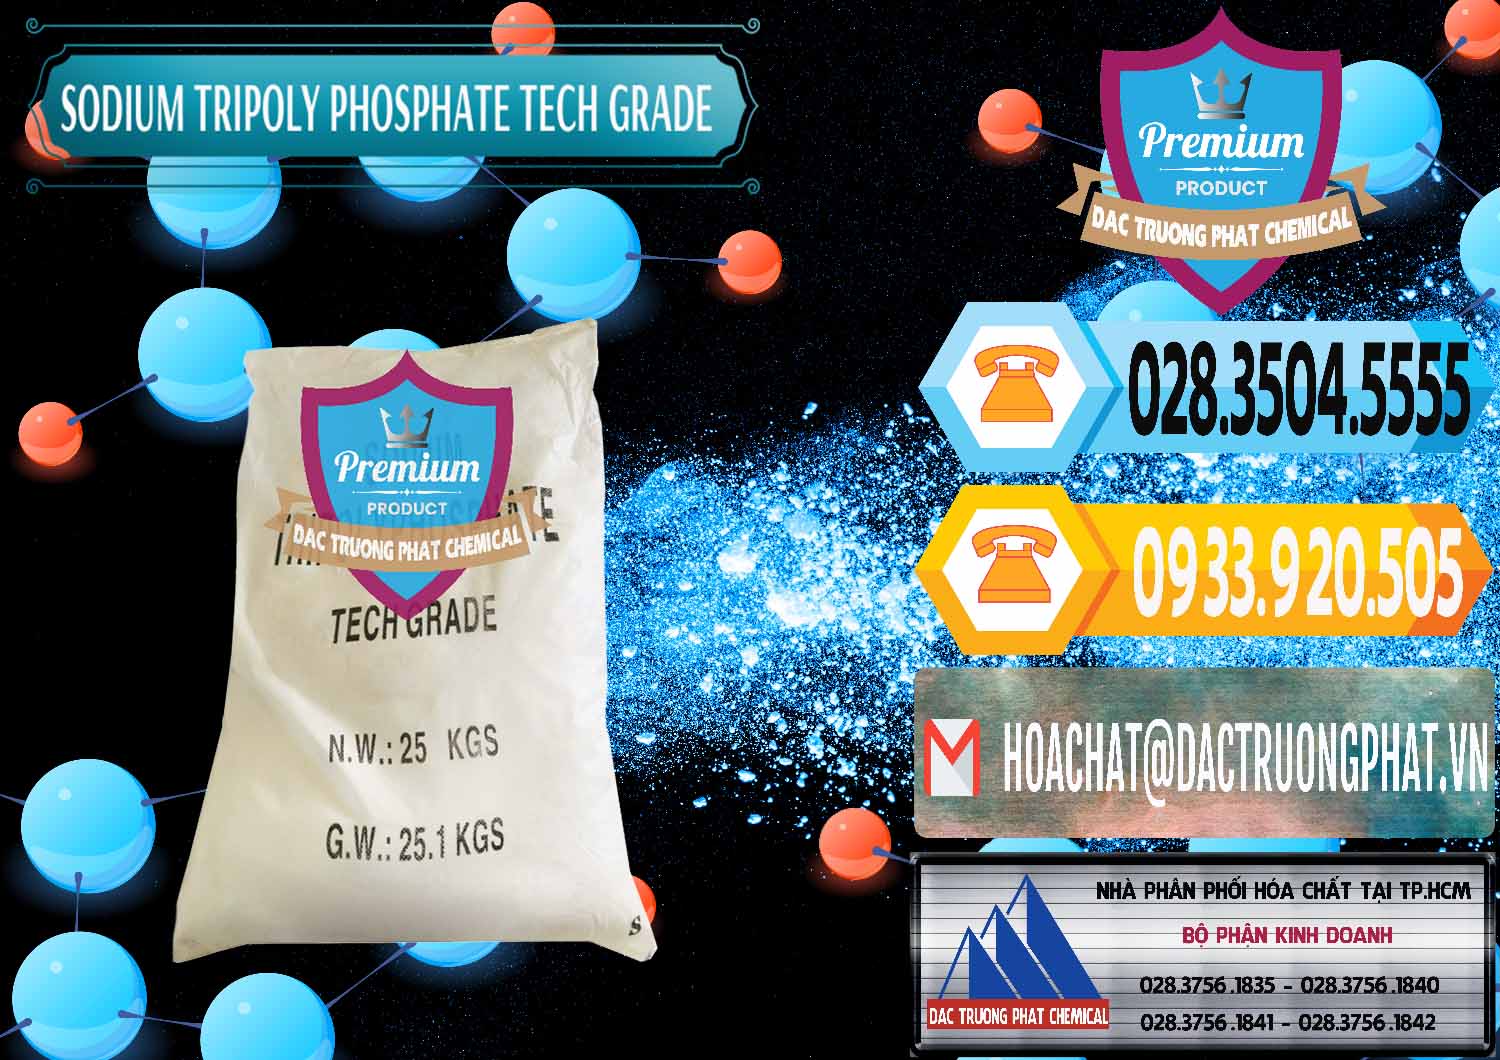 Công ty chuyên bán và cung ứng Sodium Tripoly Phosphate - STPP Tech Grade Trung Quốc China - 0453 - Kinh doanh & phân phối hóa chất tại TP.HCM - hoachattayrua.net